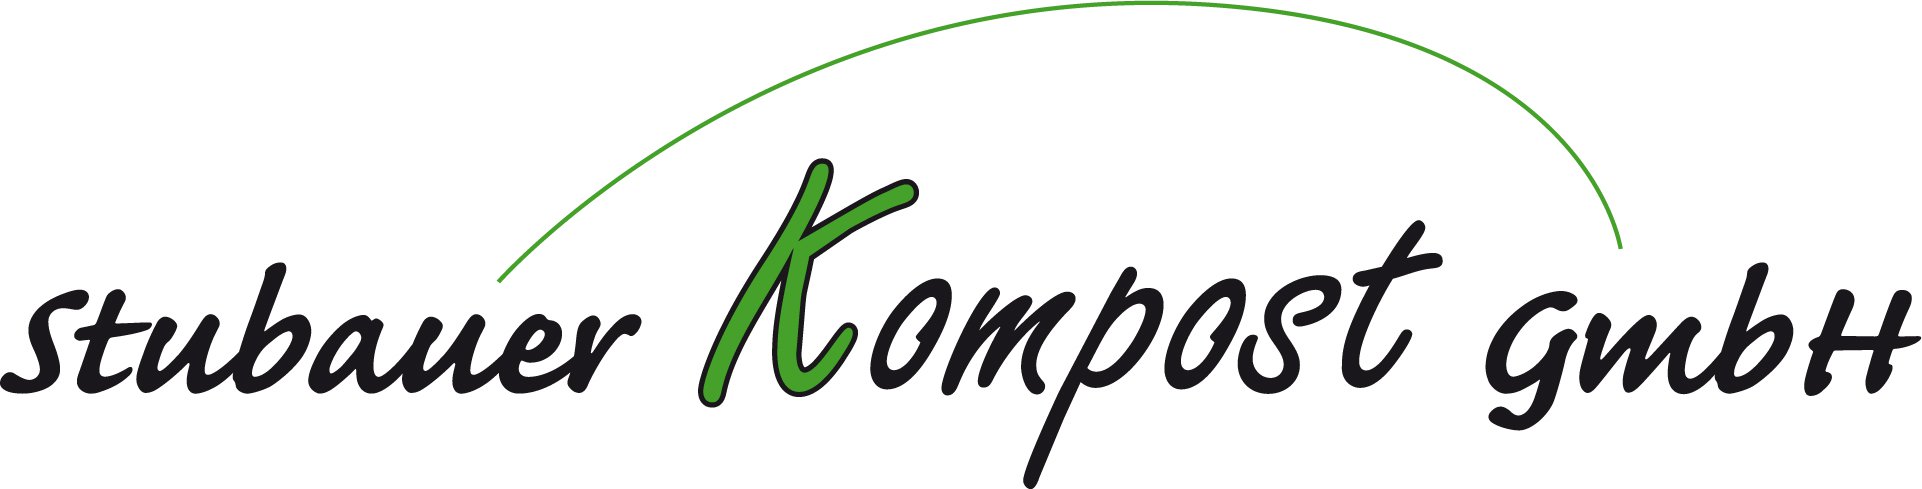 Stubauer Kompost GmbH